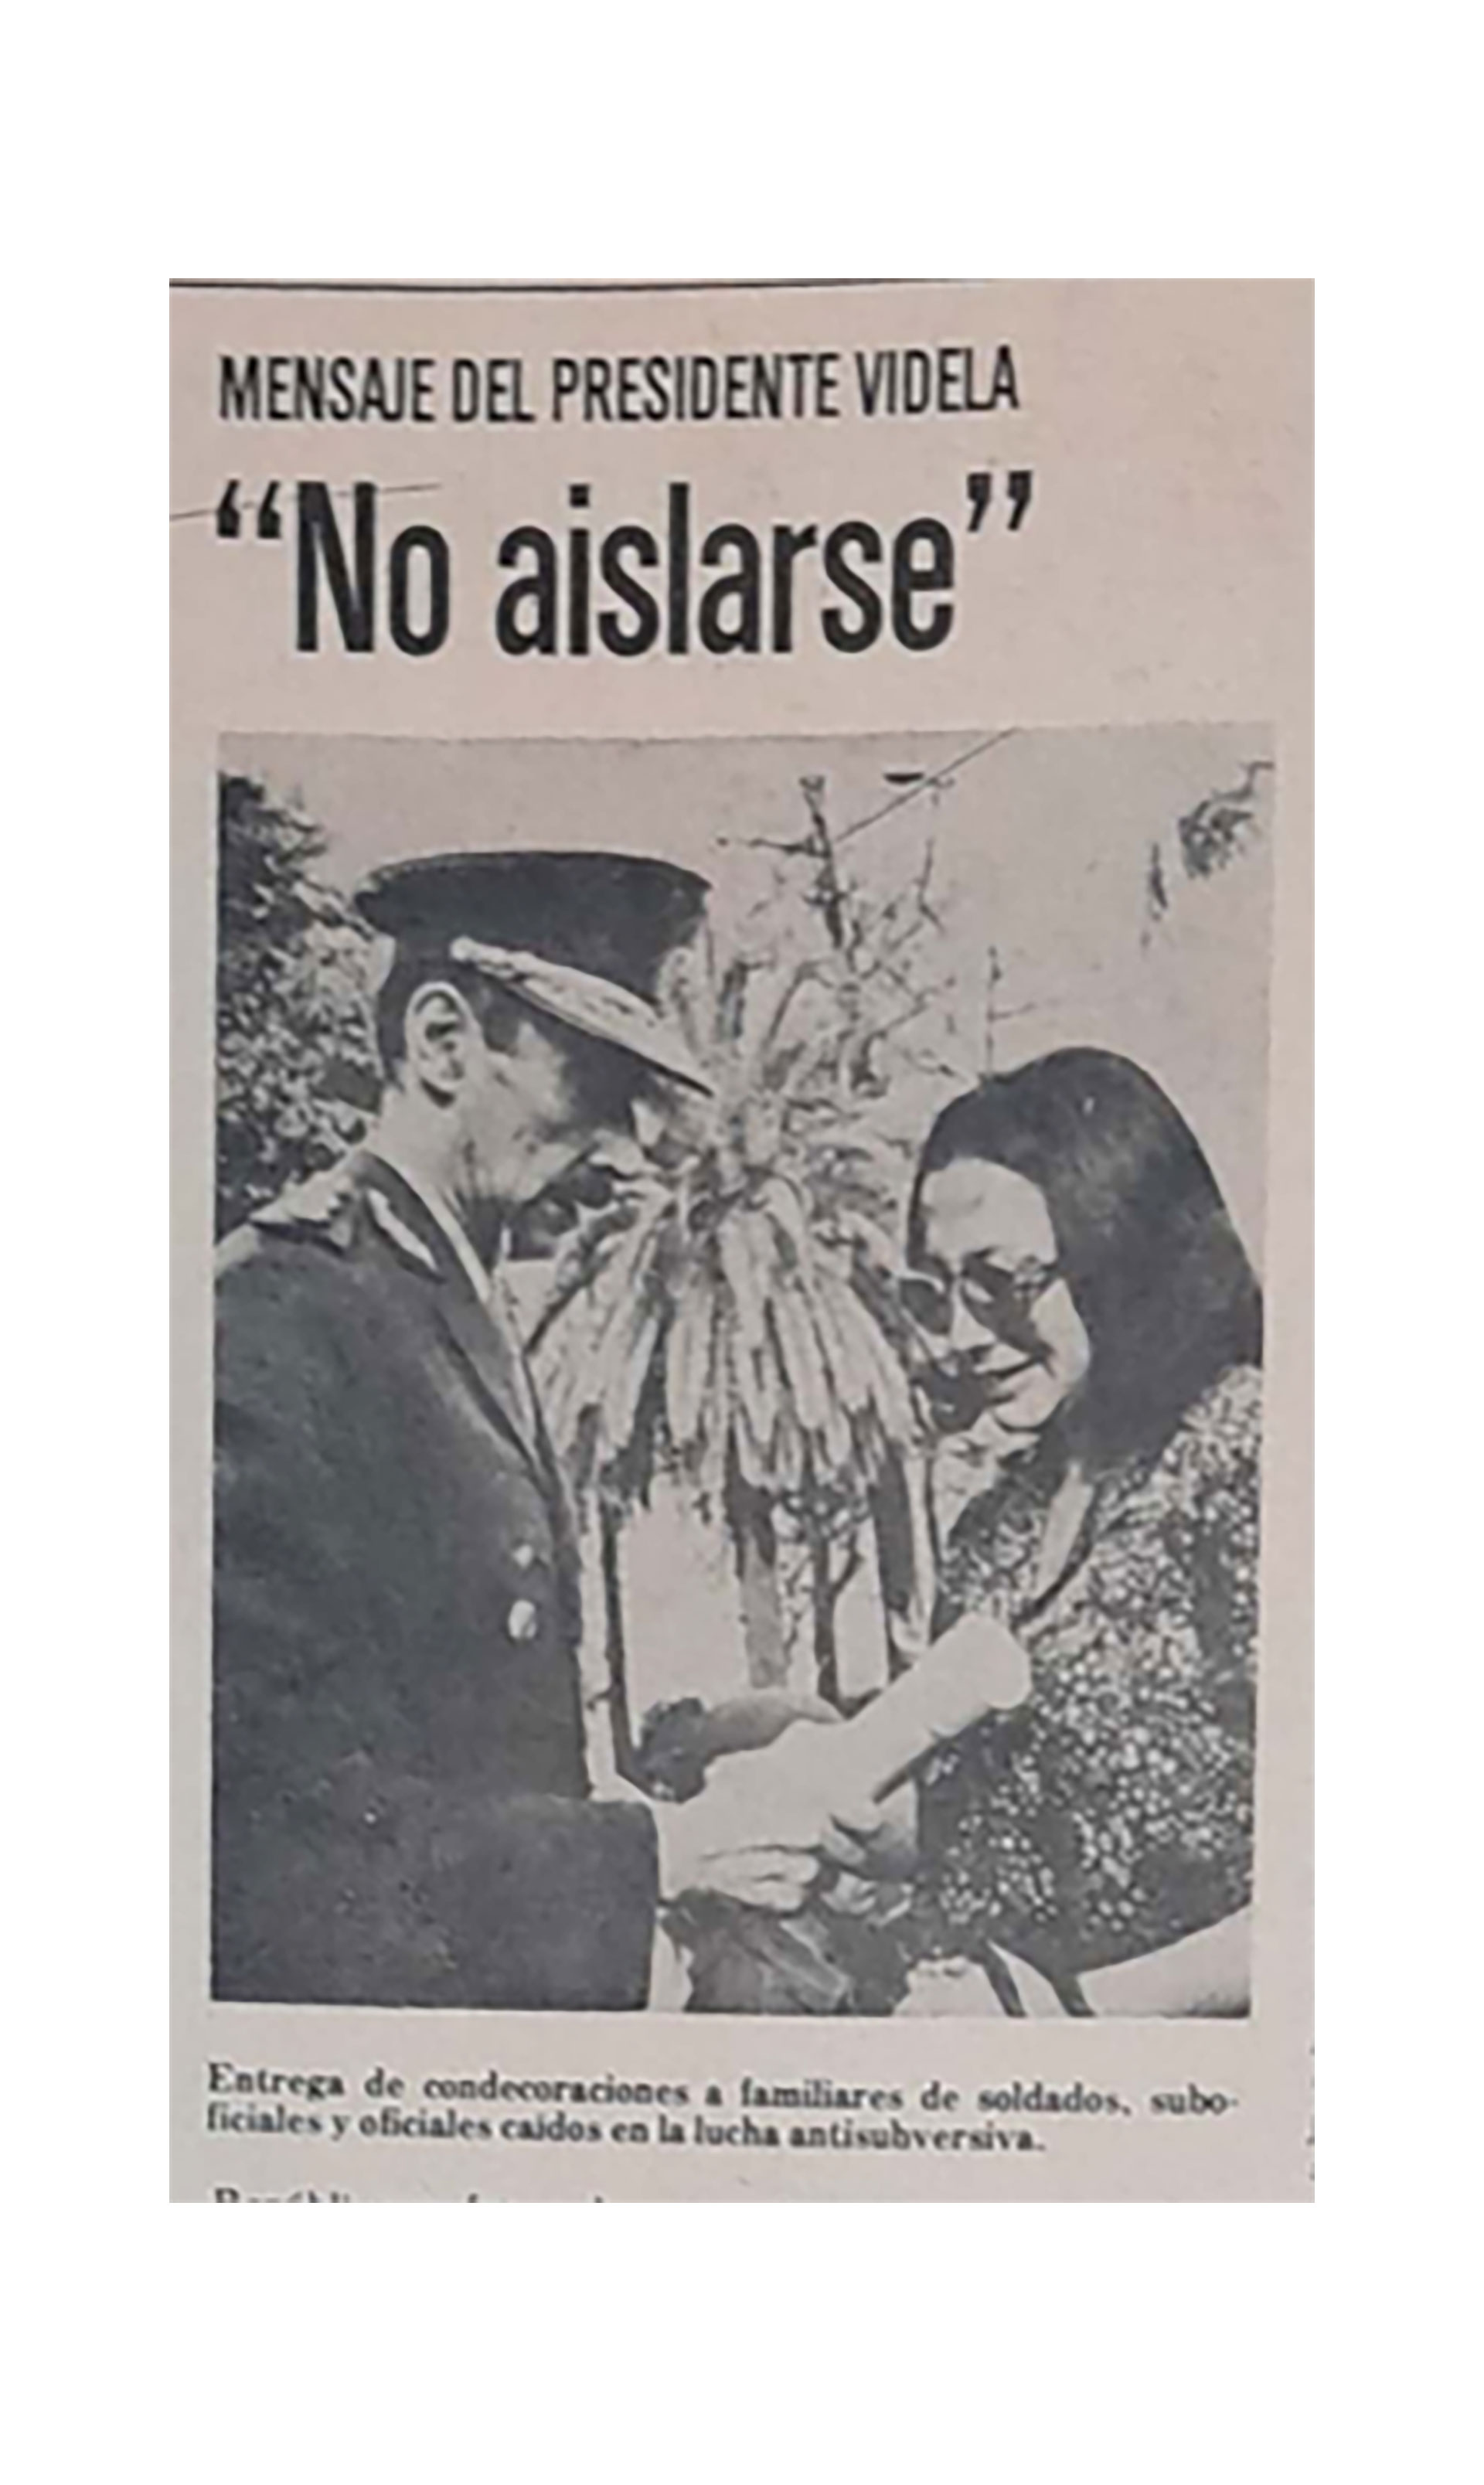 La edición 11 traía una nota con foto de Videla entregando condecoraciones a “familiares de militares caídos en la lucha antisubversiva”